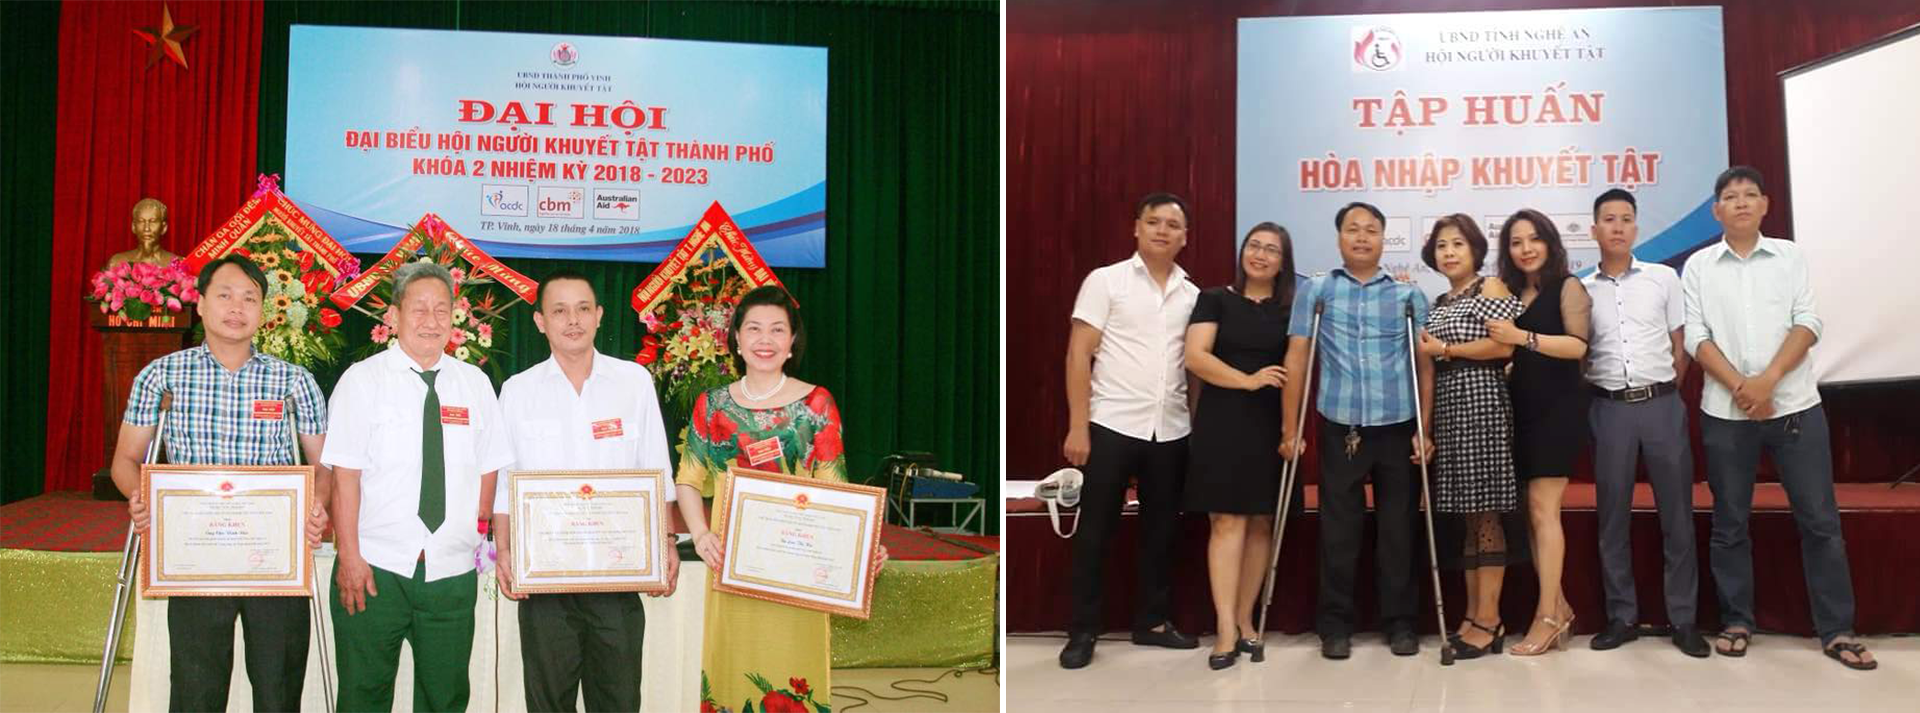 Đại hội Hội Người khuyết tật nhiệm kỳ 2018 - 2023, anh Chu Vinh Đức được bầu là Phó Chủ tịch Hội (ảnh trái); Chu Vinh Đức và các thành viên, hội viên Hội Người khuyết tật tỉnh.